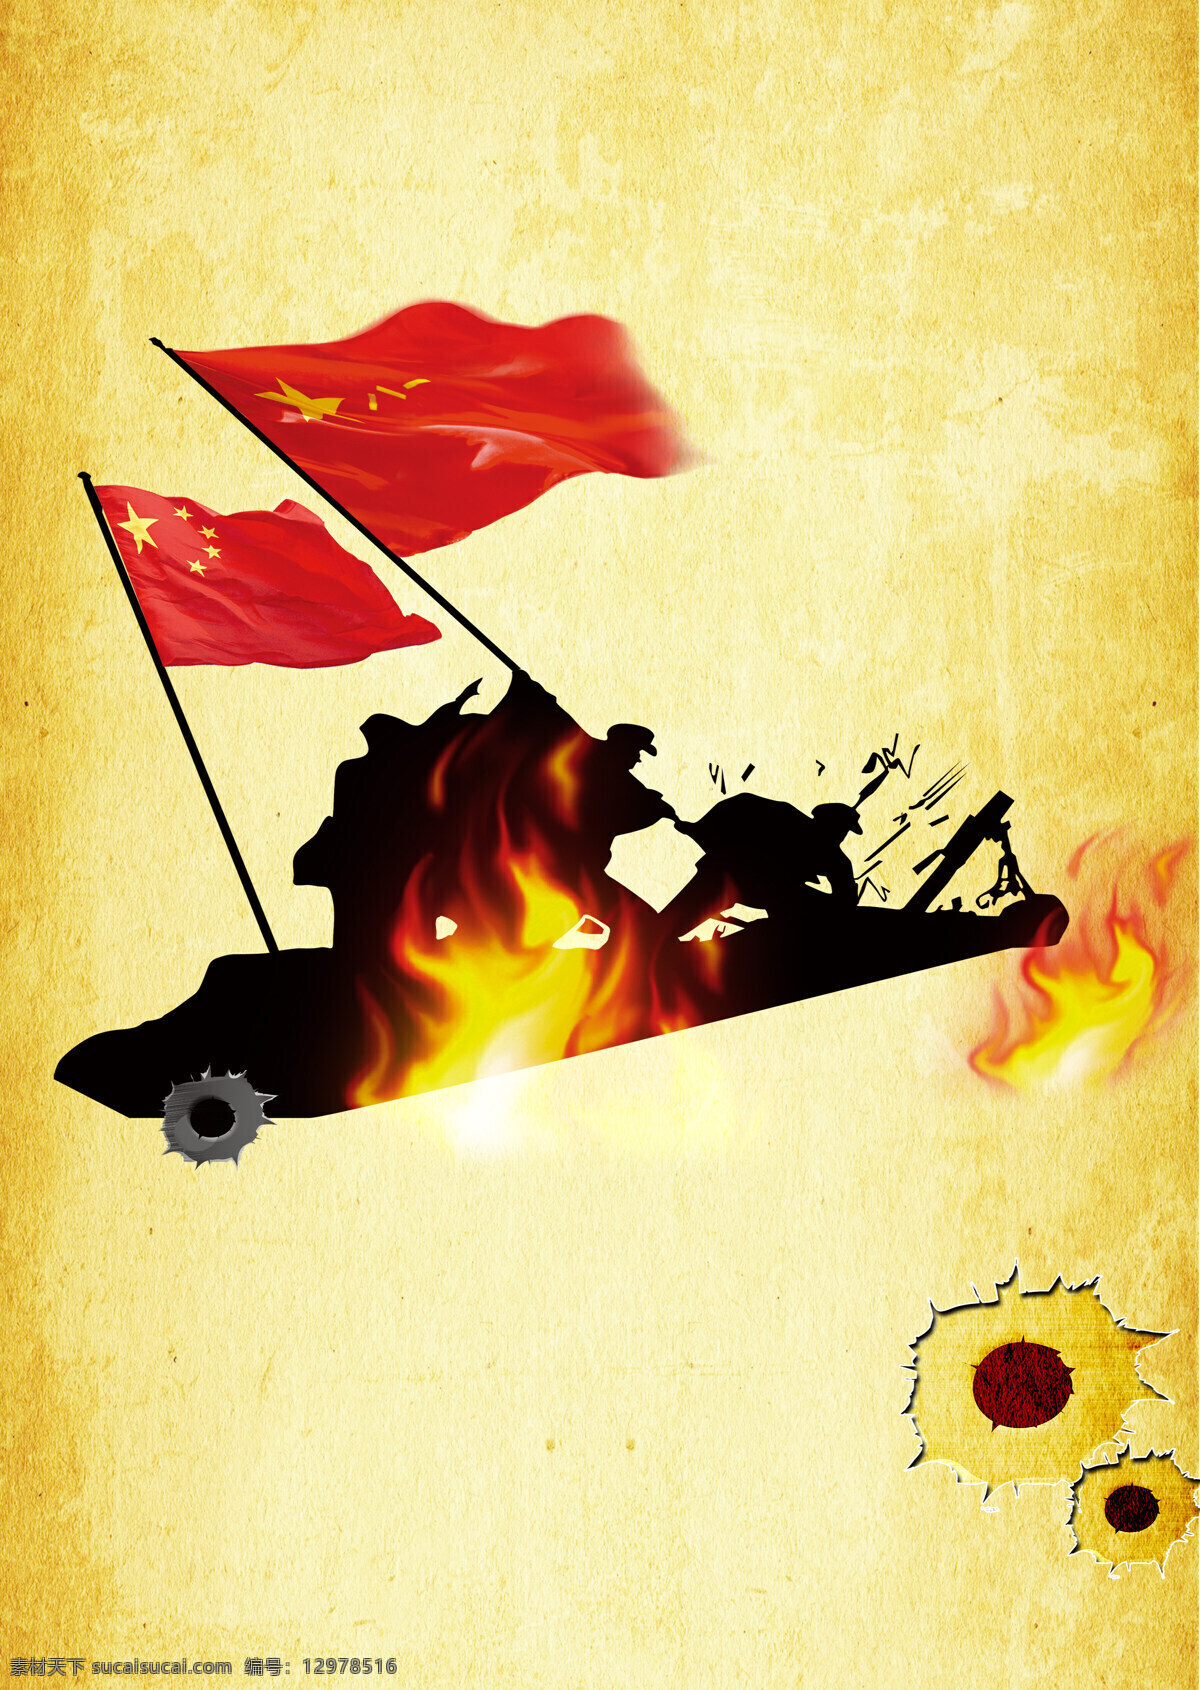 建军节 八一建军节 81建军节 建军节宣传 红旗 火焰 革命 背景